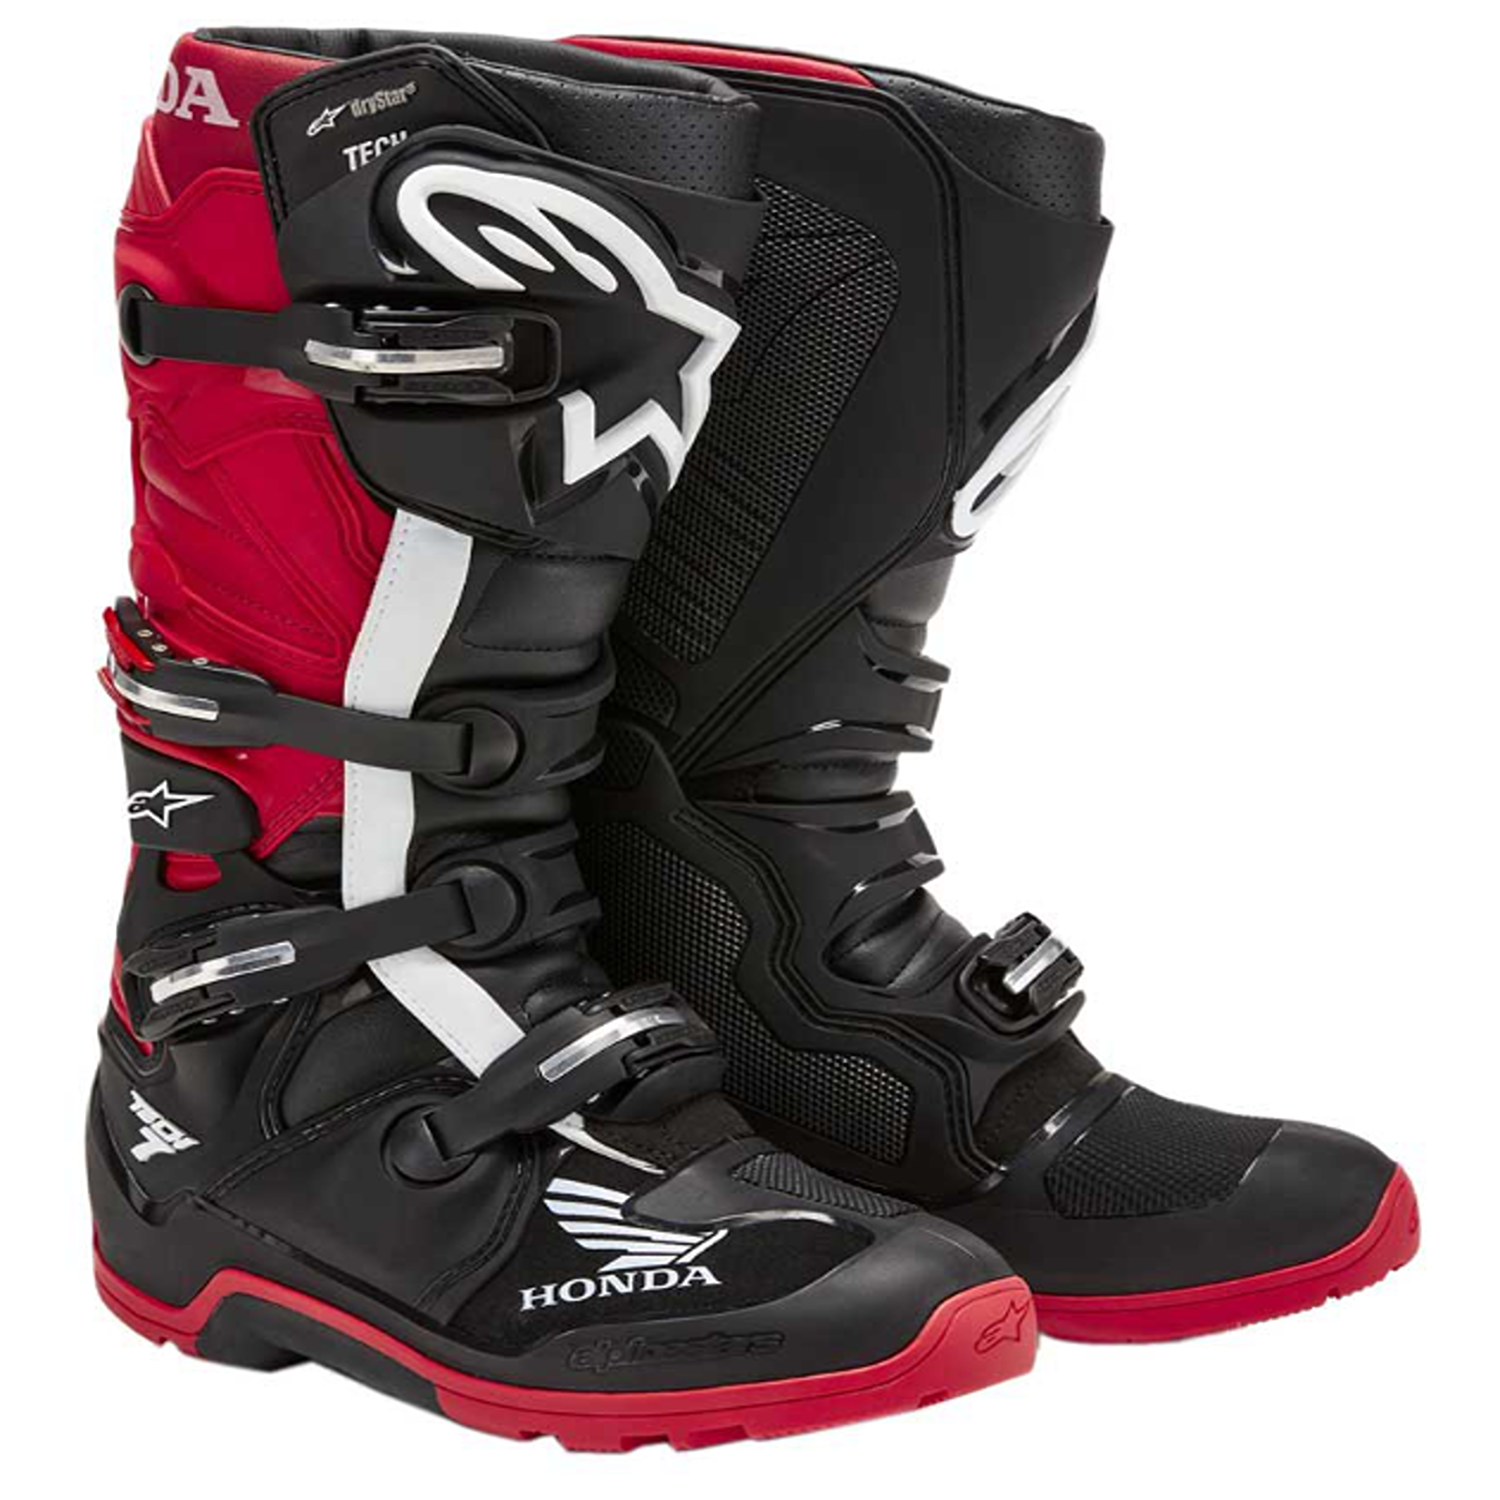 Image of Alpinestars Honda Tech 7 Enduro Drystar Boots Black Bright Red Größe US 8